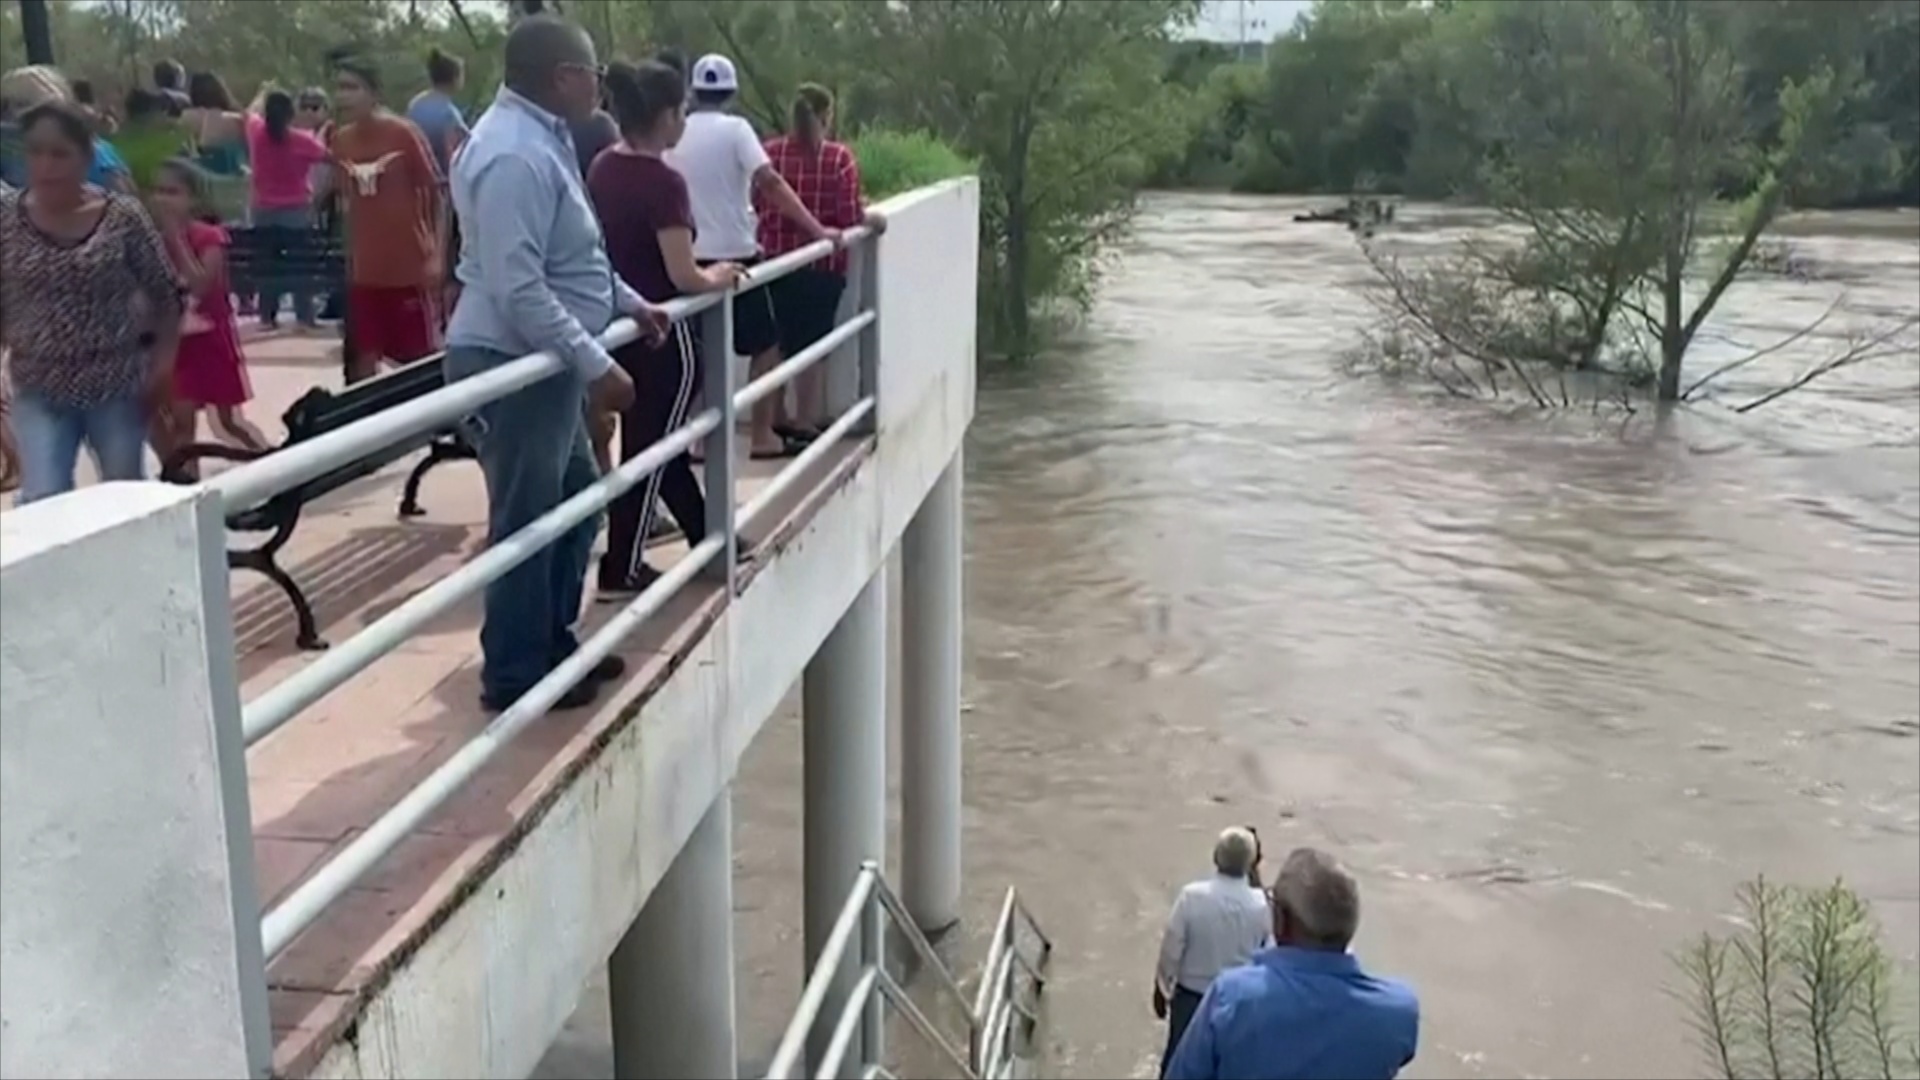 На севере Мексики началось сильное наводнение